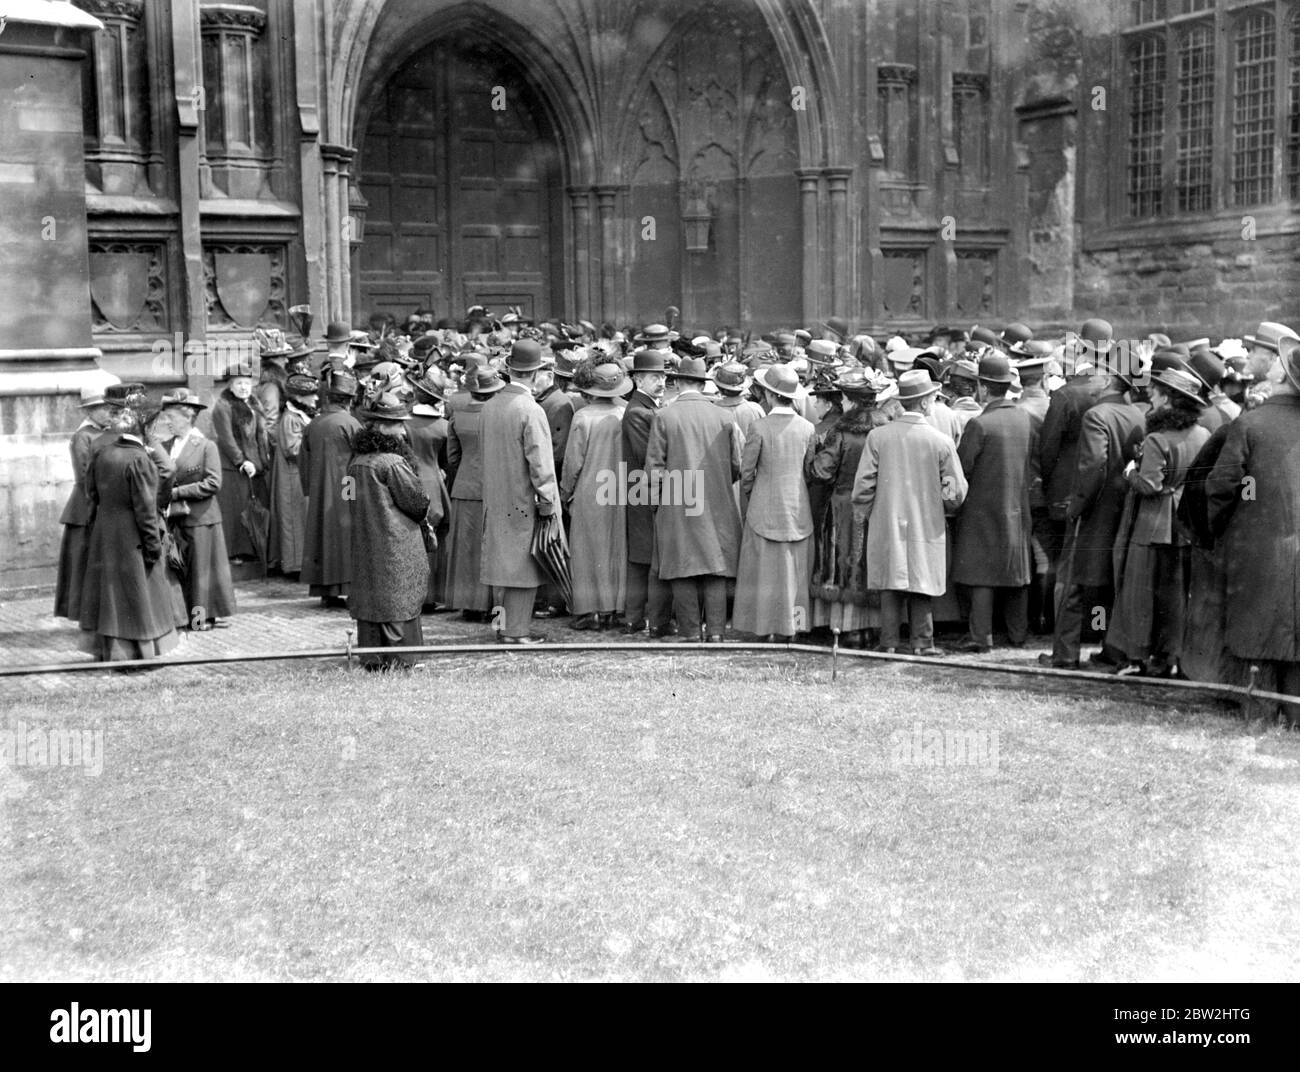 Kitchener Gedenkfeier in der Westminster Abbey eine Stunde vor Beginn des Gottesdienst war die Abbey voll - Foto zeigt die Menge, die nicht in die Kirche konnte. 1914-1918 Stockfoto